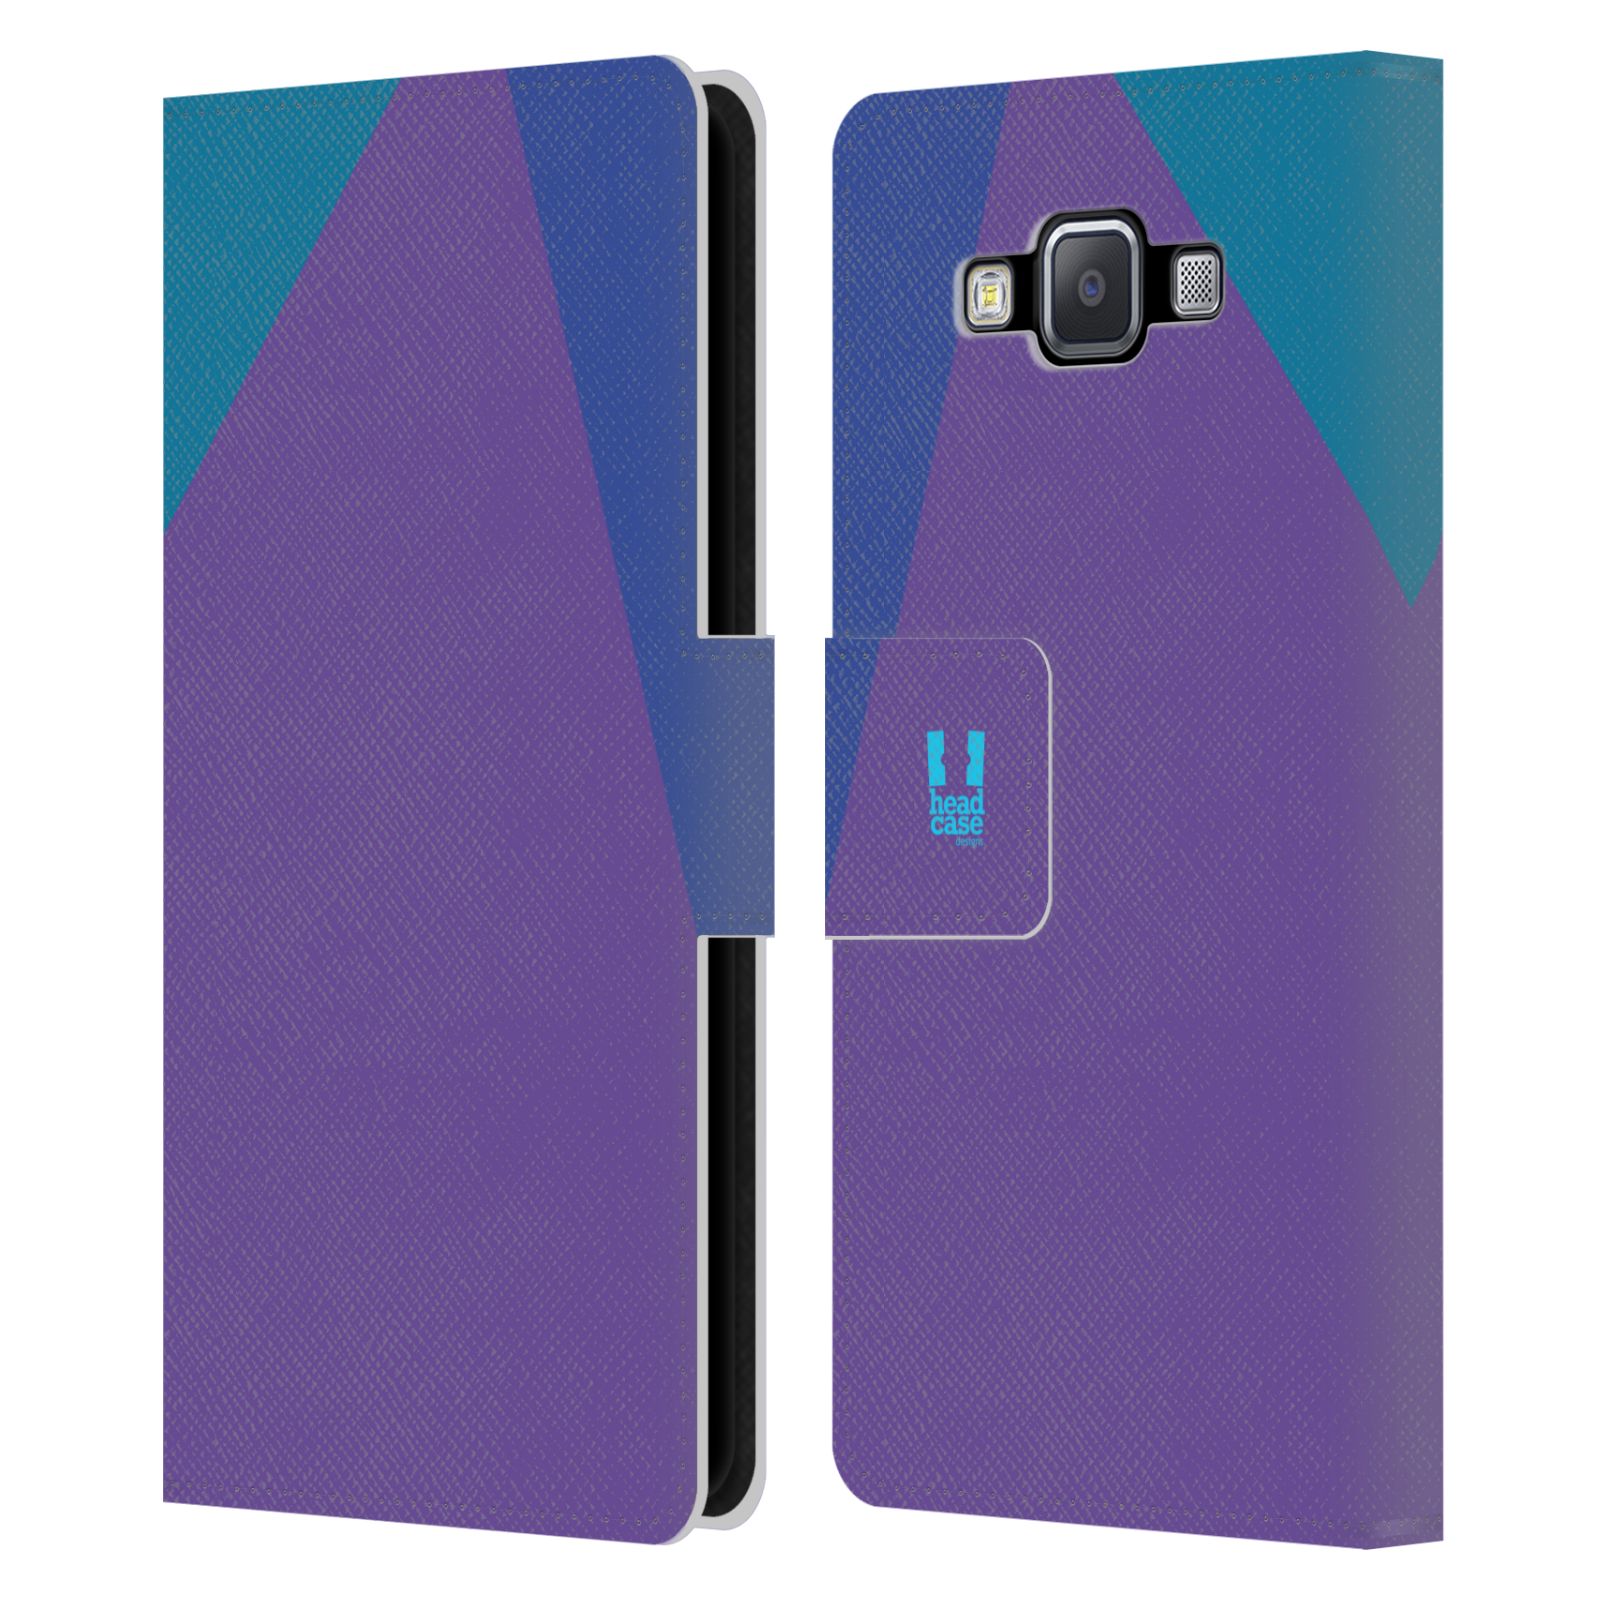 HEAD CASE Flipové pouzdro pro mobil Samsung Galaxy A5 barevné tvary fialová feminine